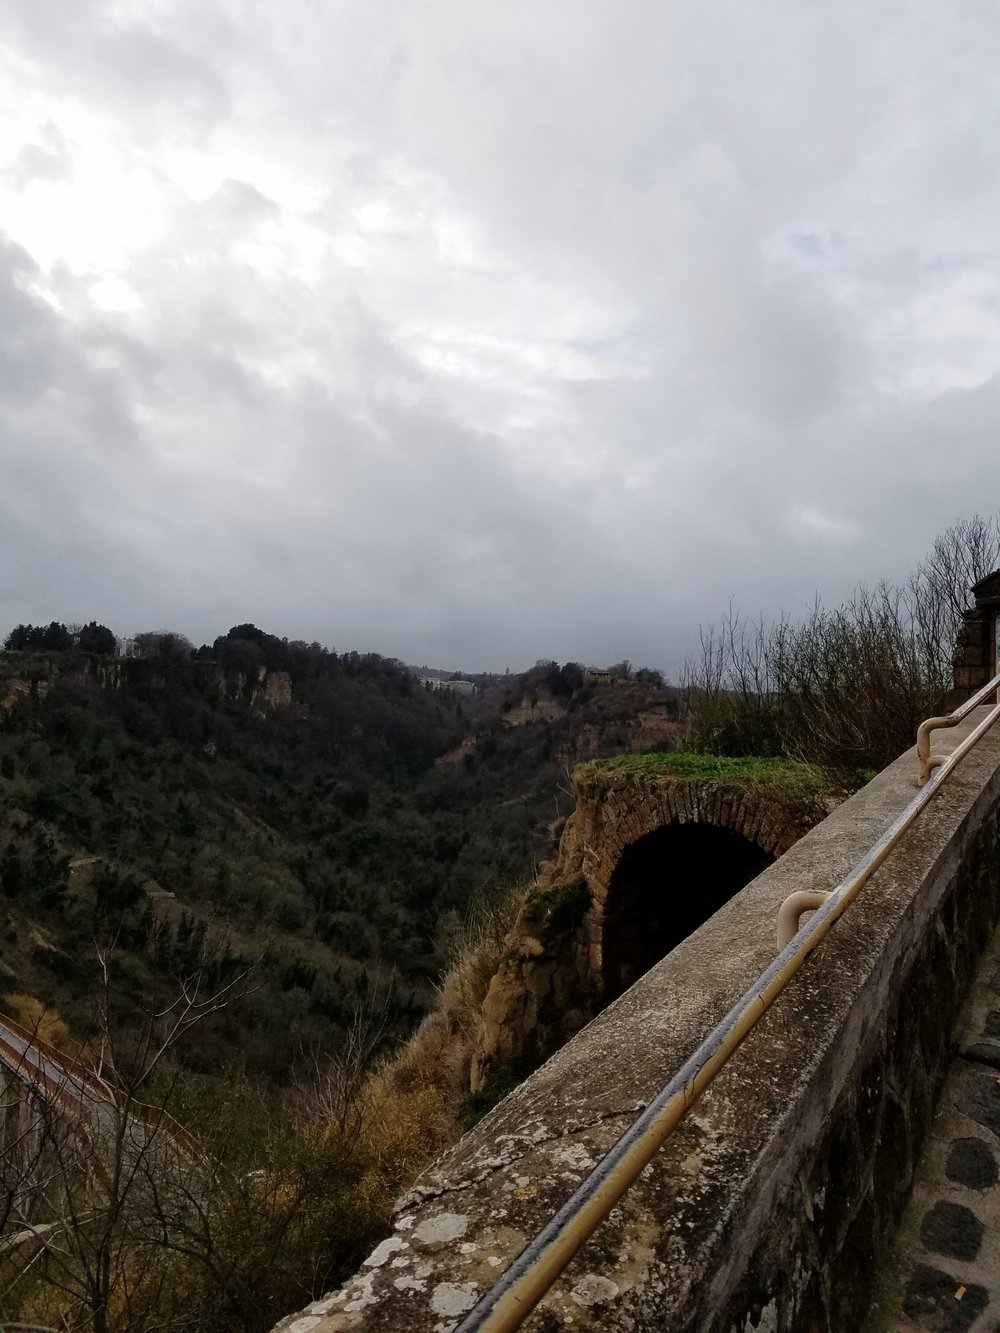 Almost to the top of the bridge into Civita